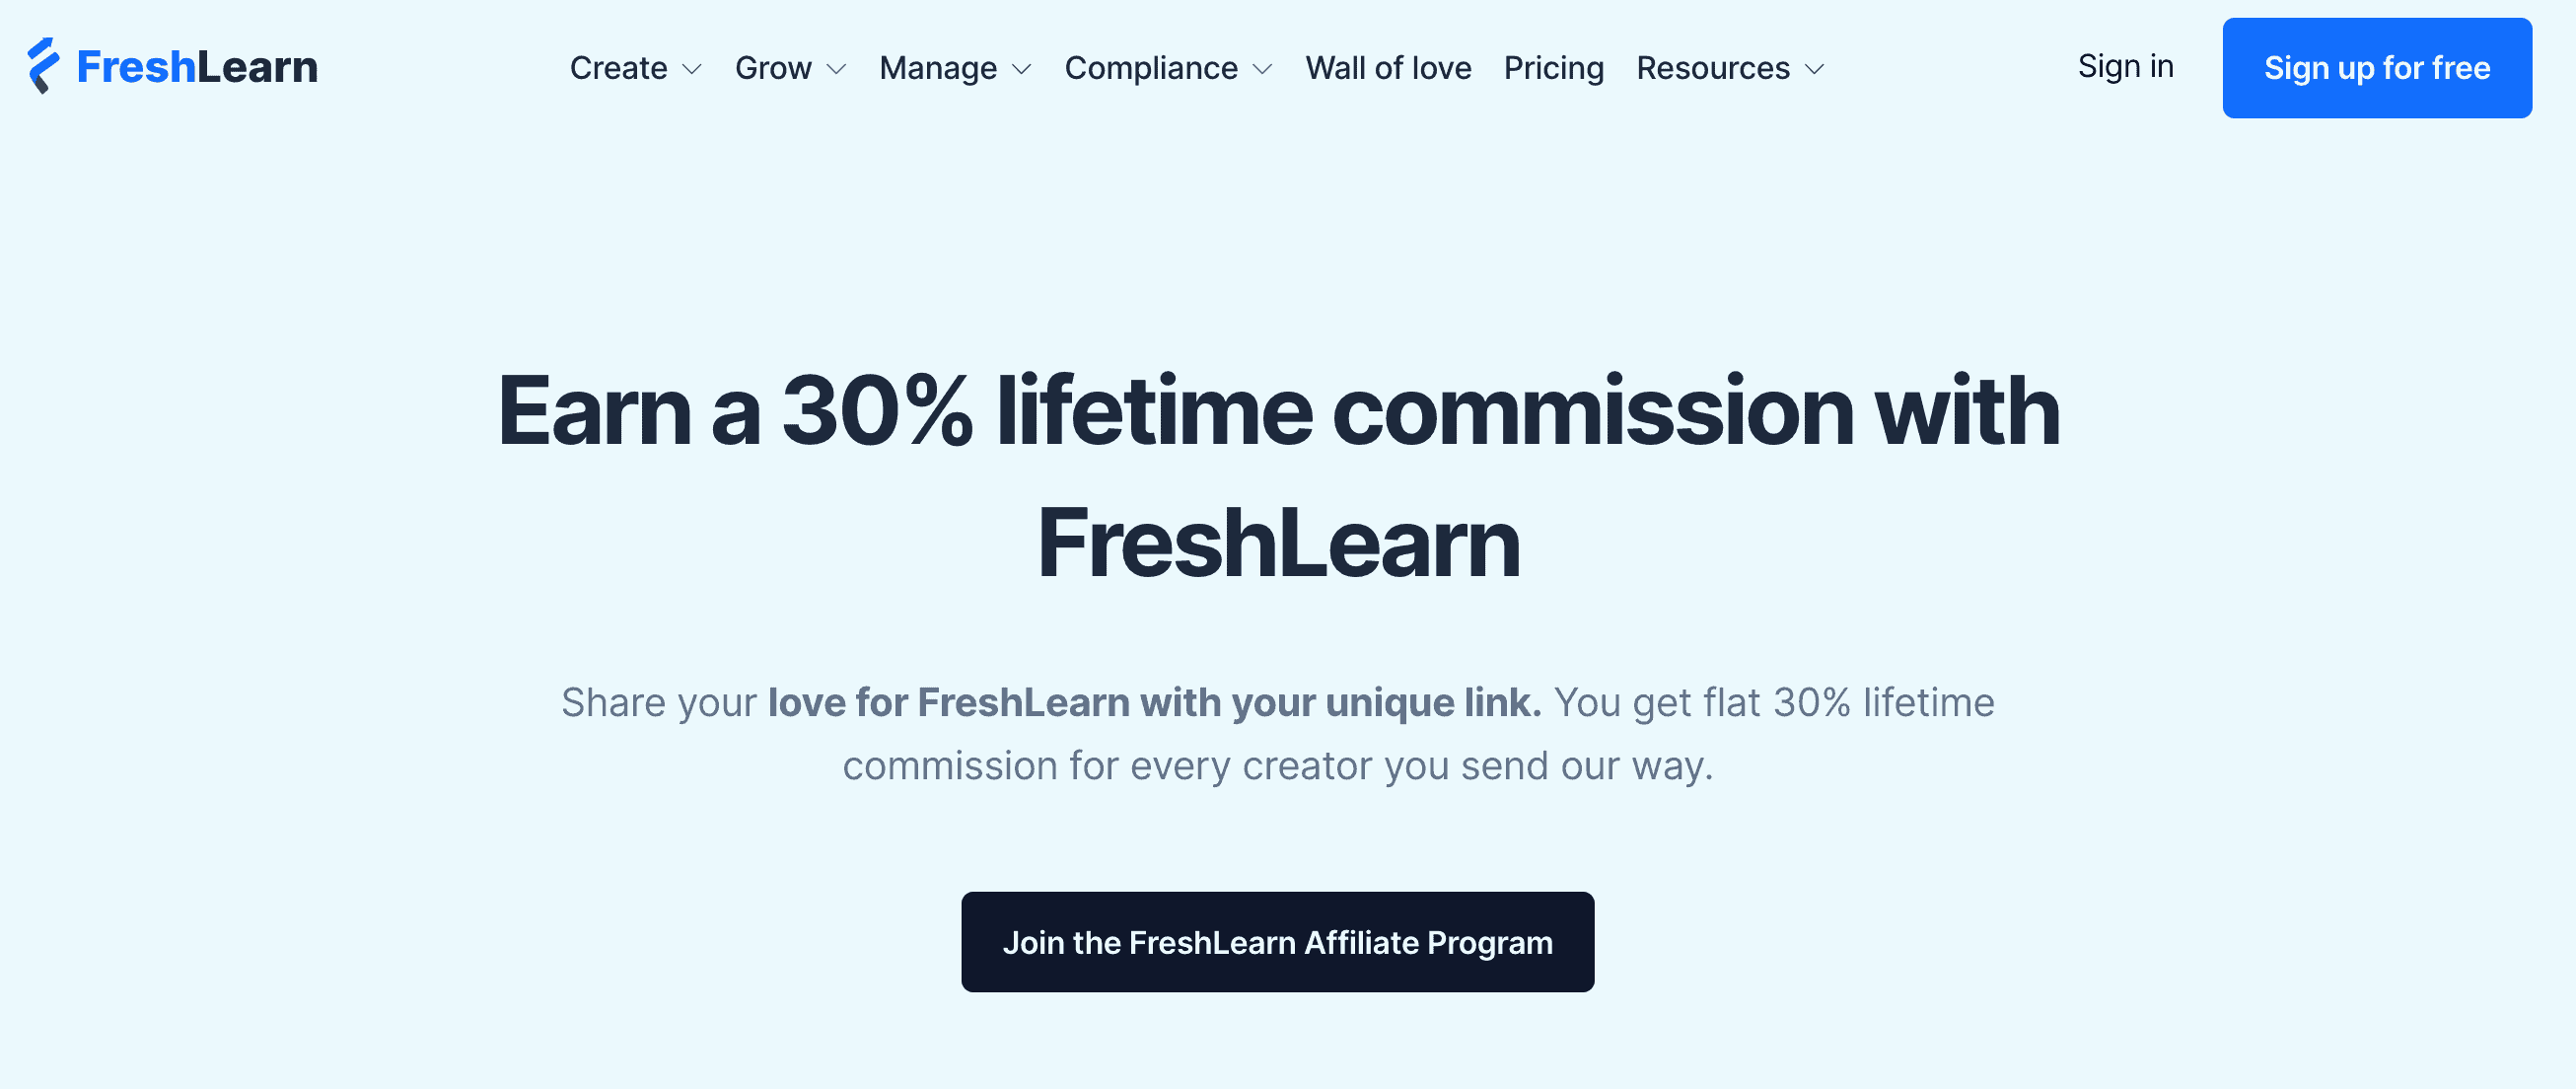 freshlearn affiliate program 